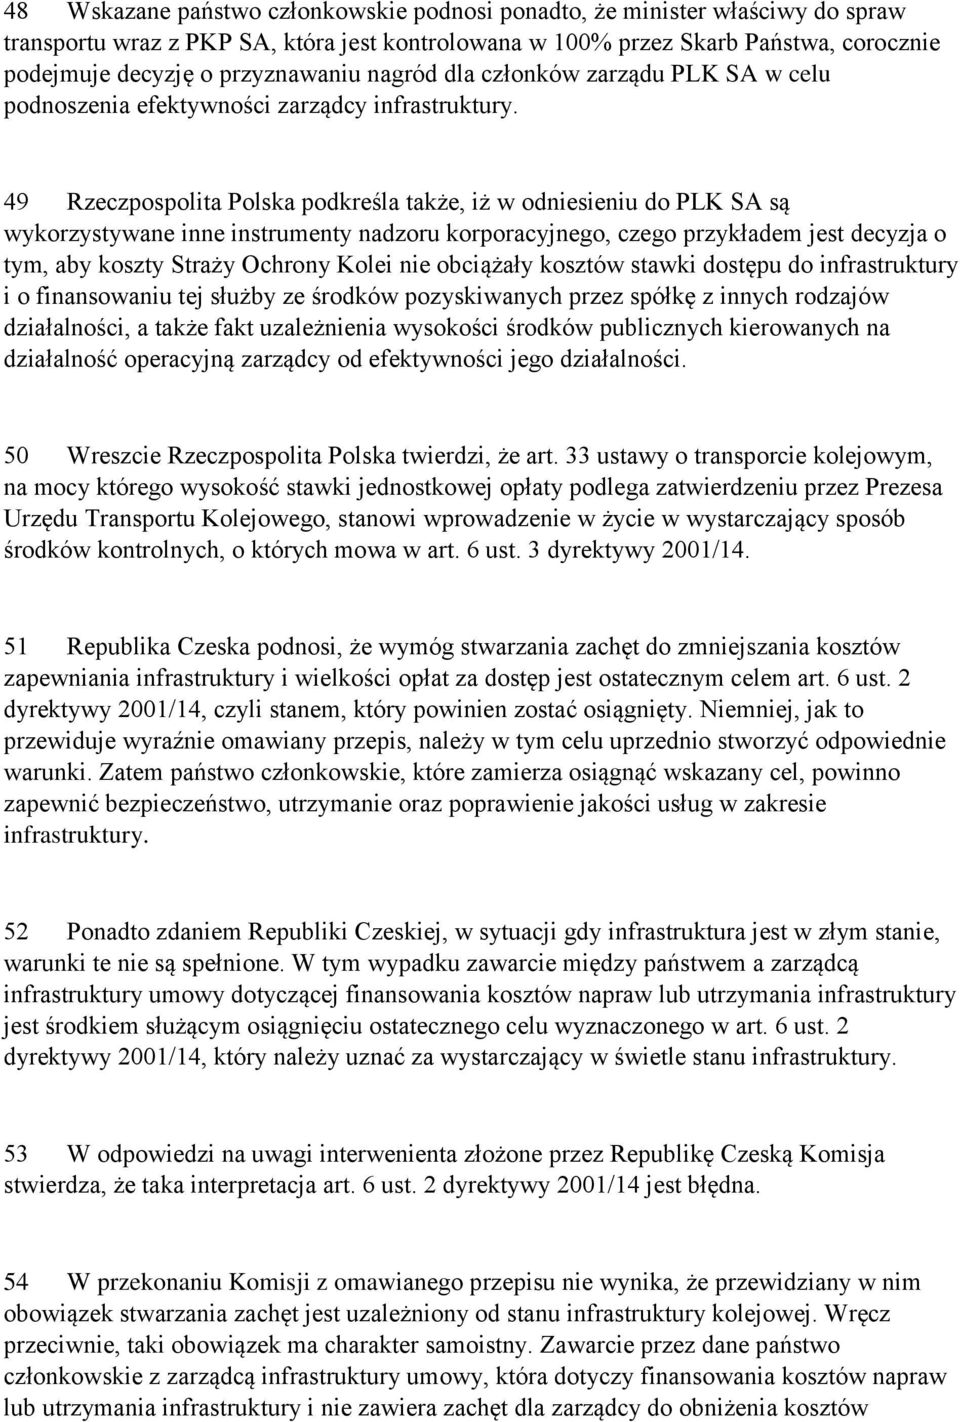 49 Rzeczpospolita Polska podkreśla także, iż w odniesieniu do PLK SA są wykorzystywane inne instrumenty nadzoru korporacyjnego, czego przykładem jest decyzja o tym, aby koszty Straży Ochrony Kolei